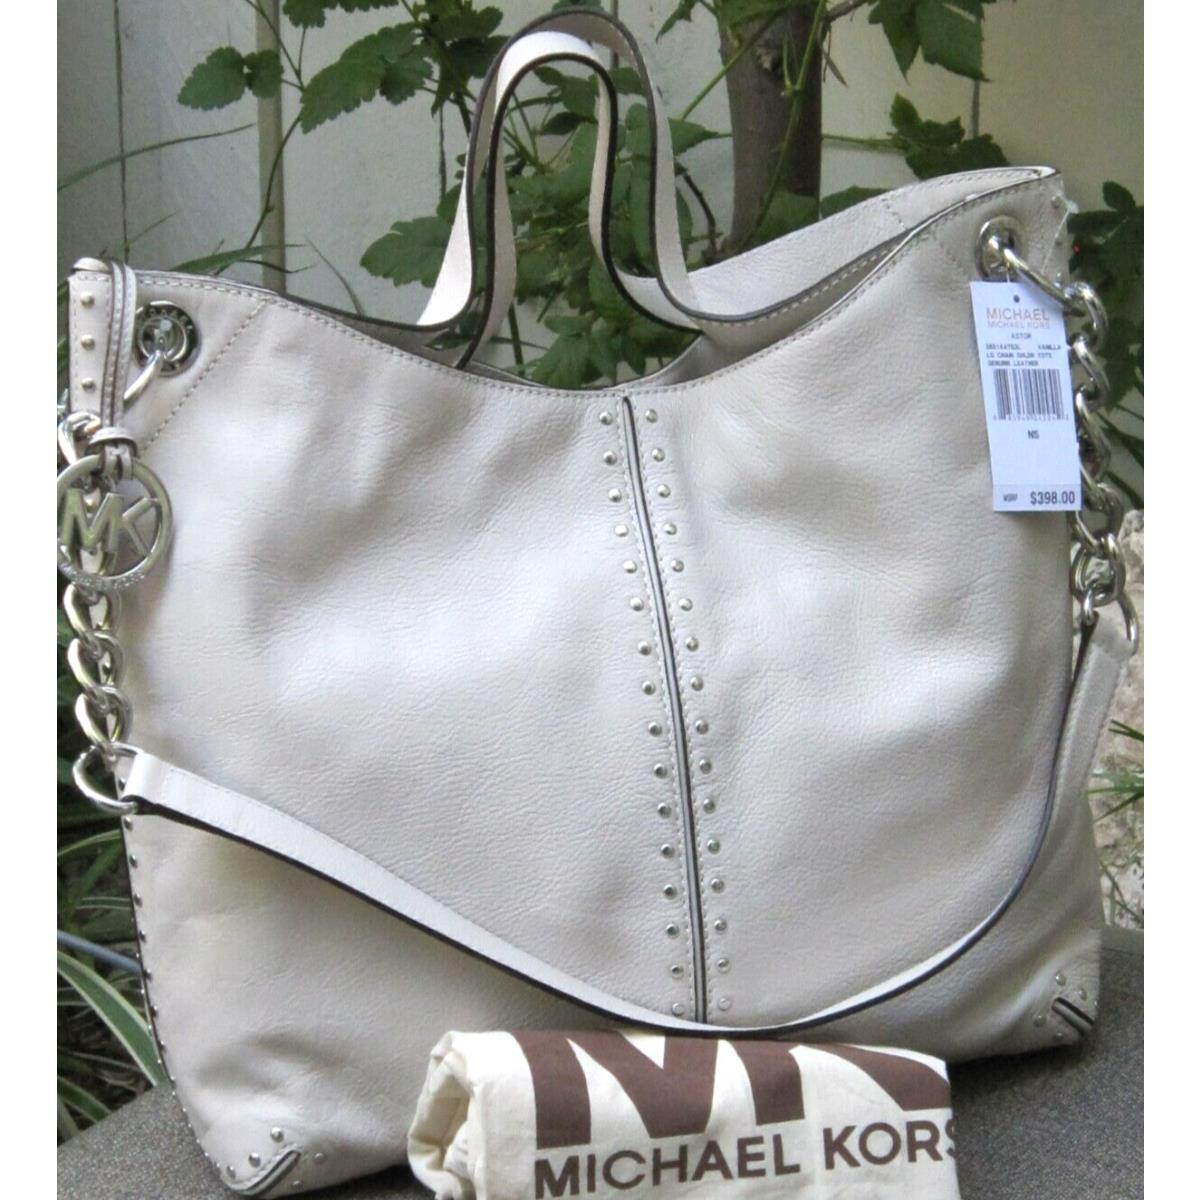 Michael Kors Downtown Astor Large Pebbled Leather Shoulder Bag in Black   Lyst